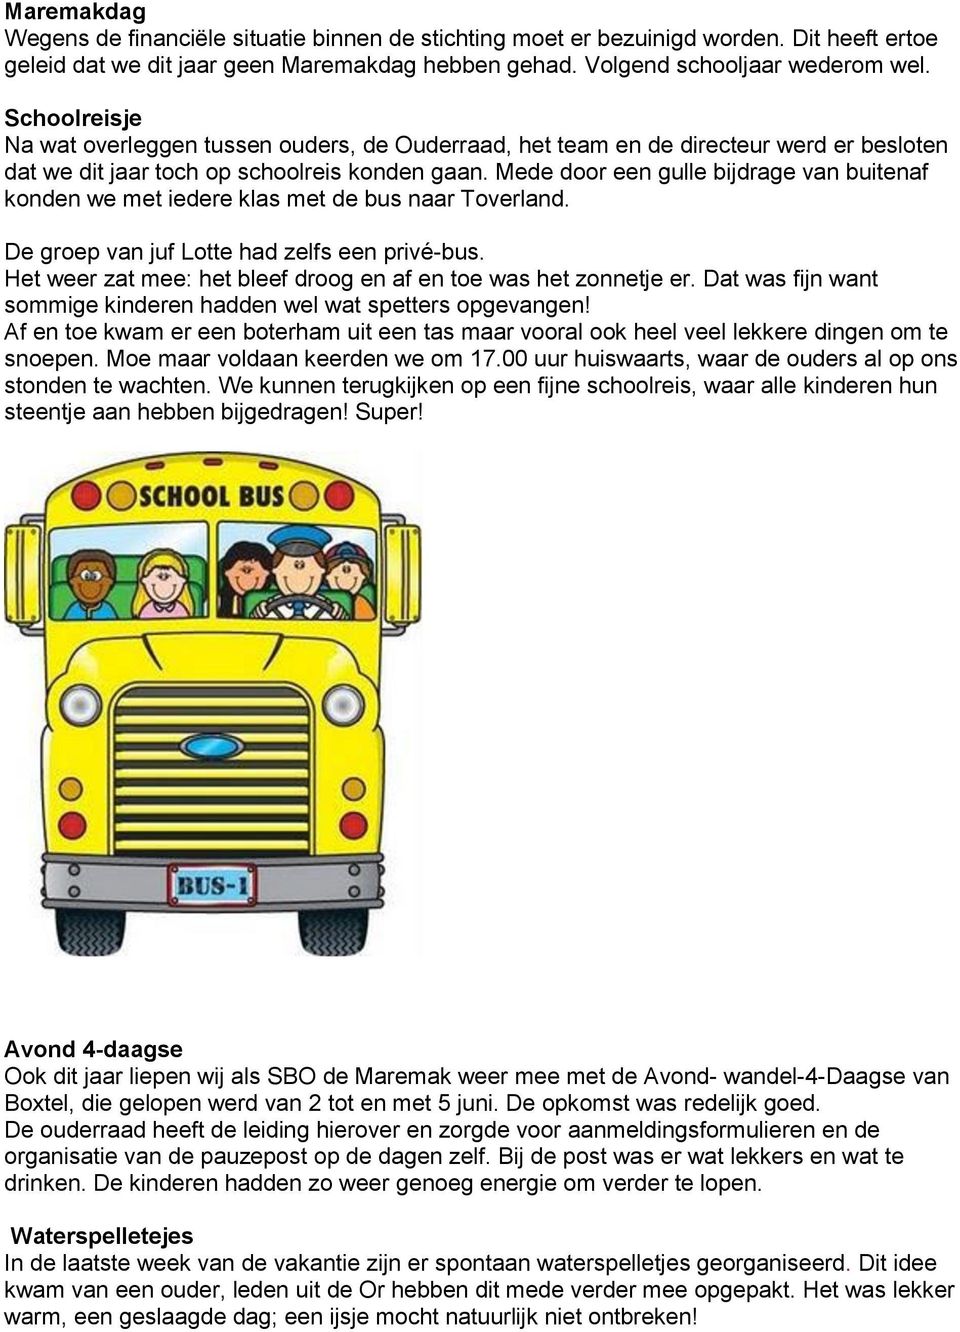 Mede door een gulle bijdrage van buitenaf konden we met iedere klas met de bus naar Toverland. De groep van juf Lotte had zelfs een privé-bus.